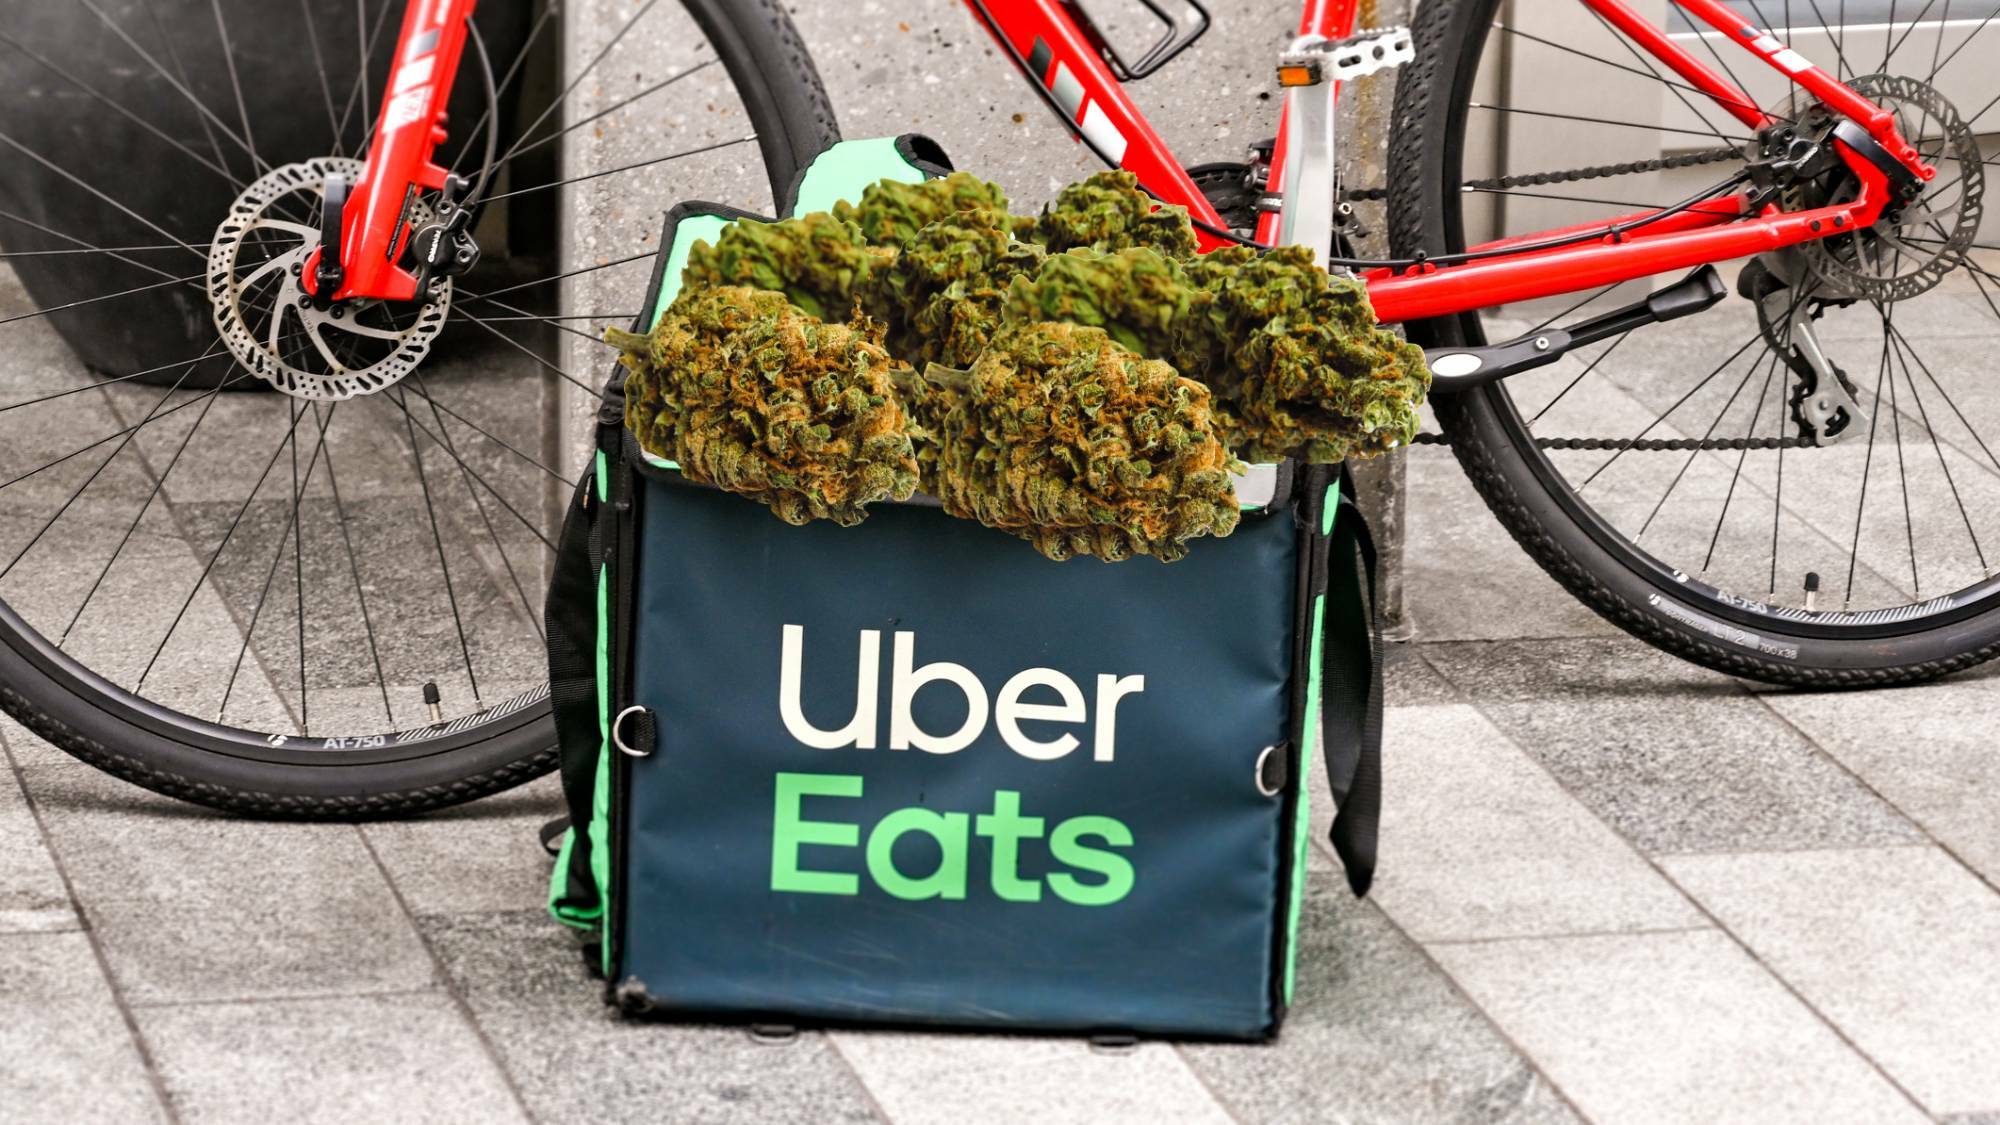 Uber lance la livraison de cannabis à domicile via Uber Eats